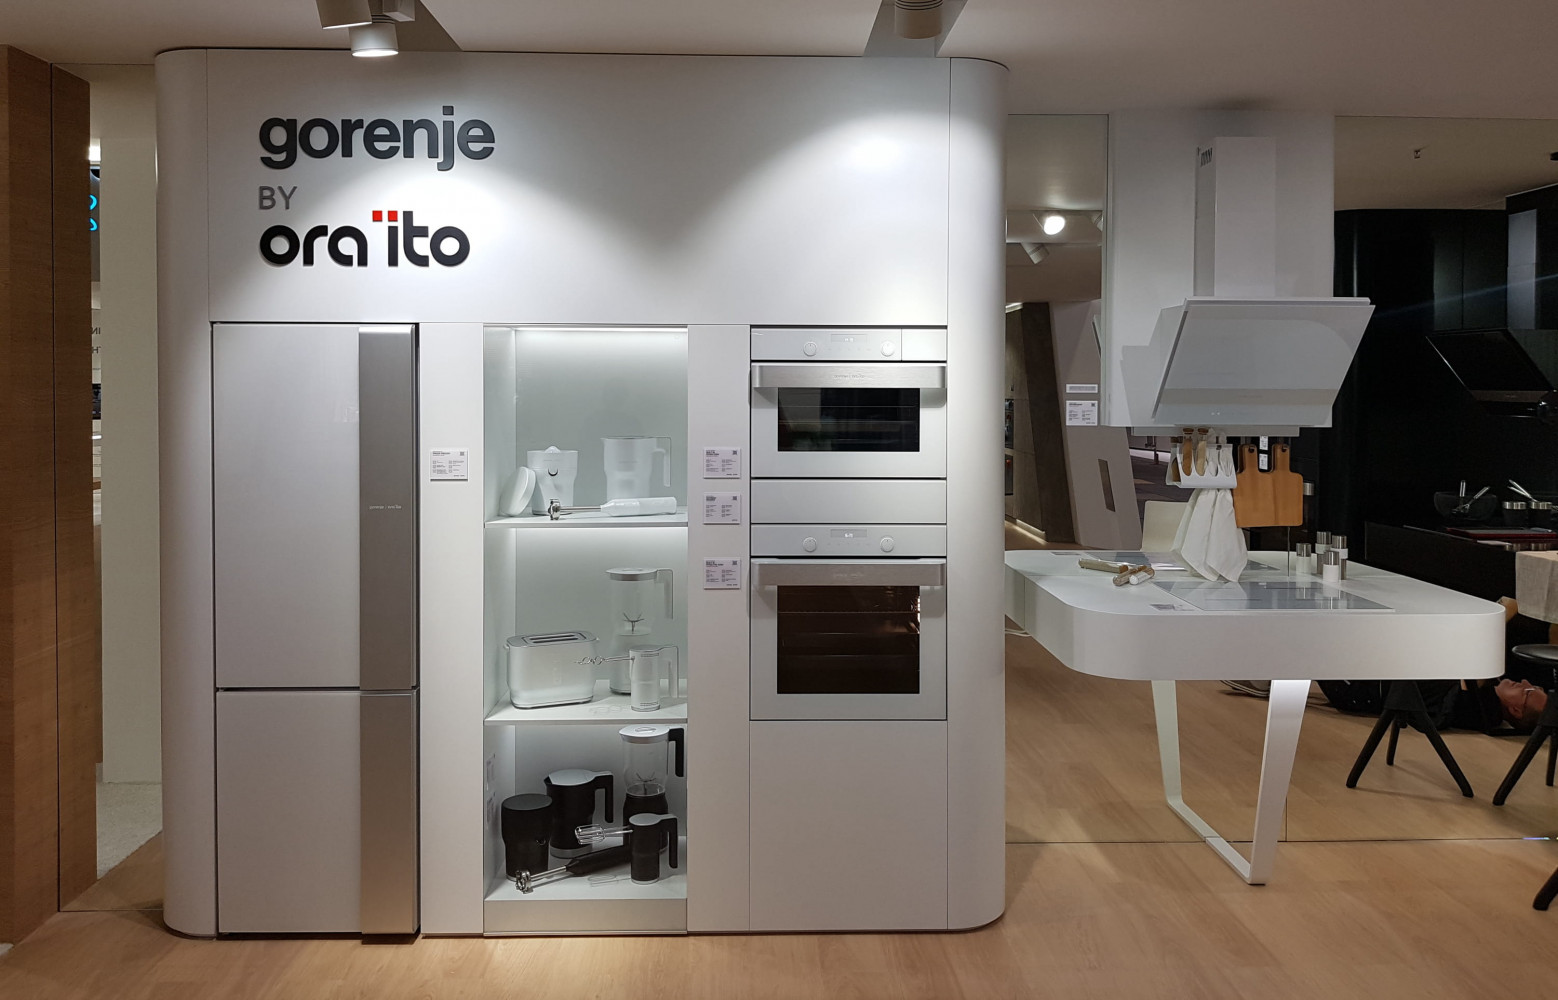 Gorenje présente une cuisine conçue par Ora Ito dans son style organico-futuriste.